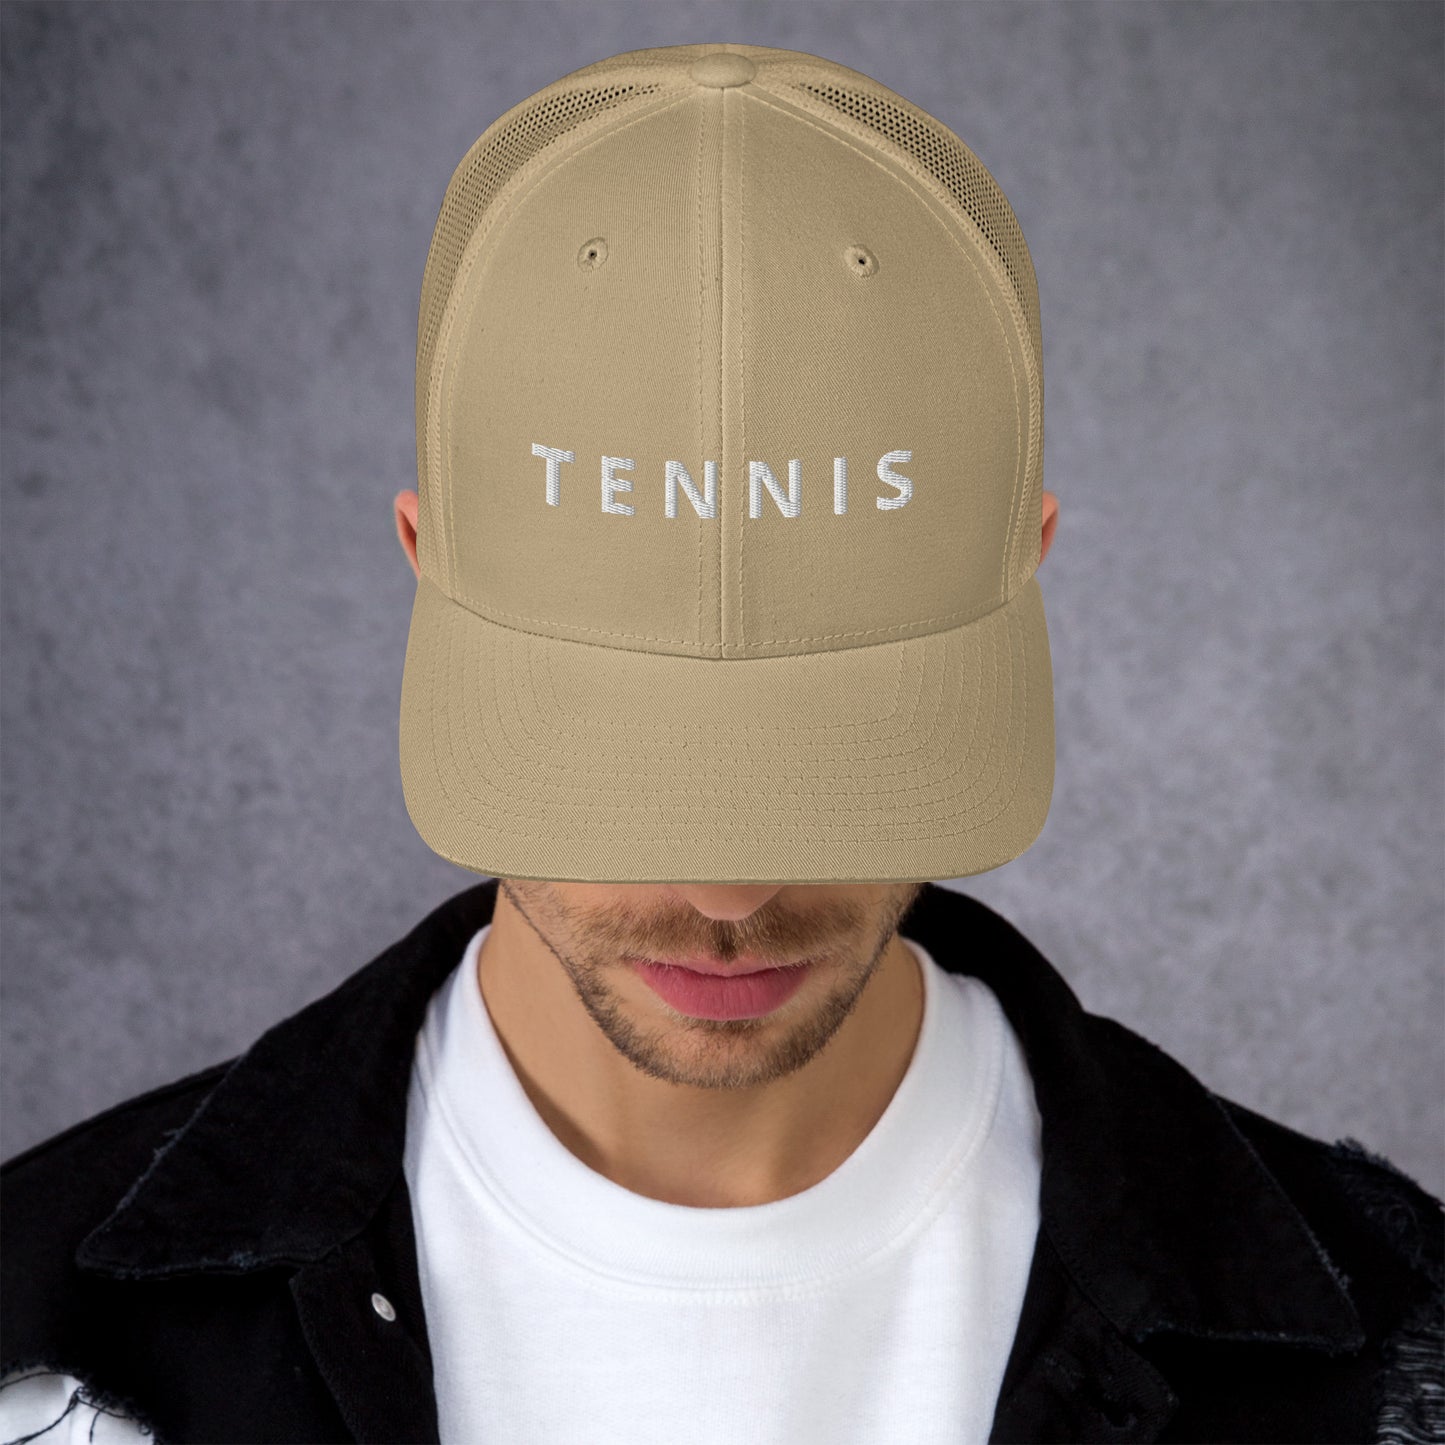 Tennis Trucker Cap